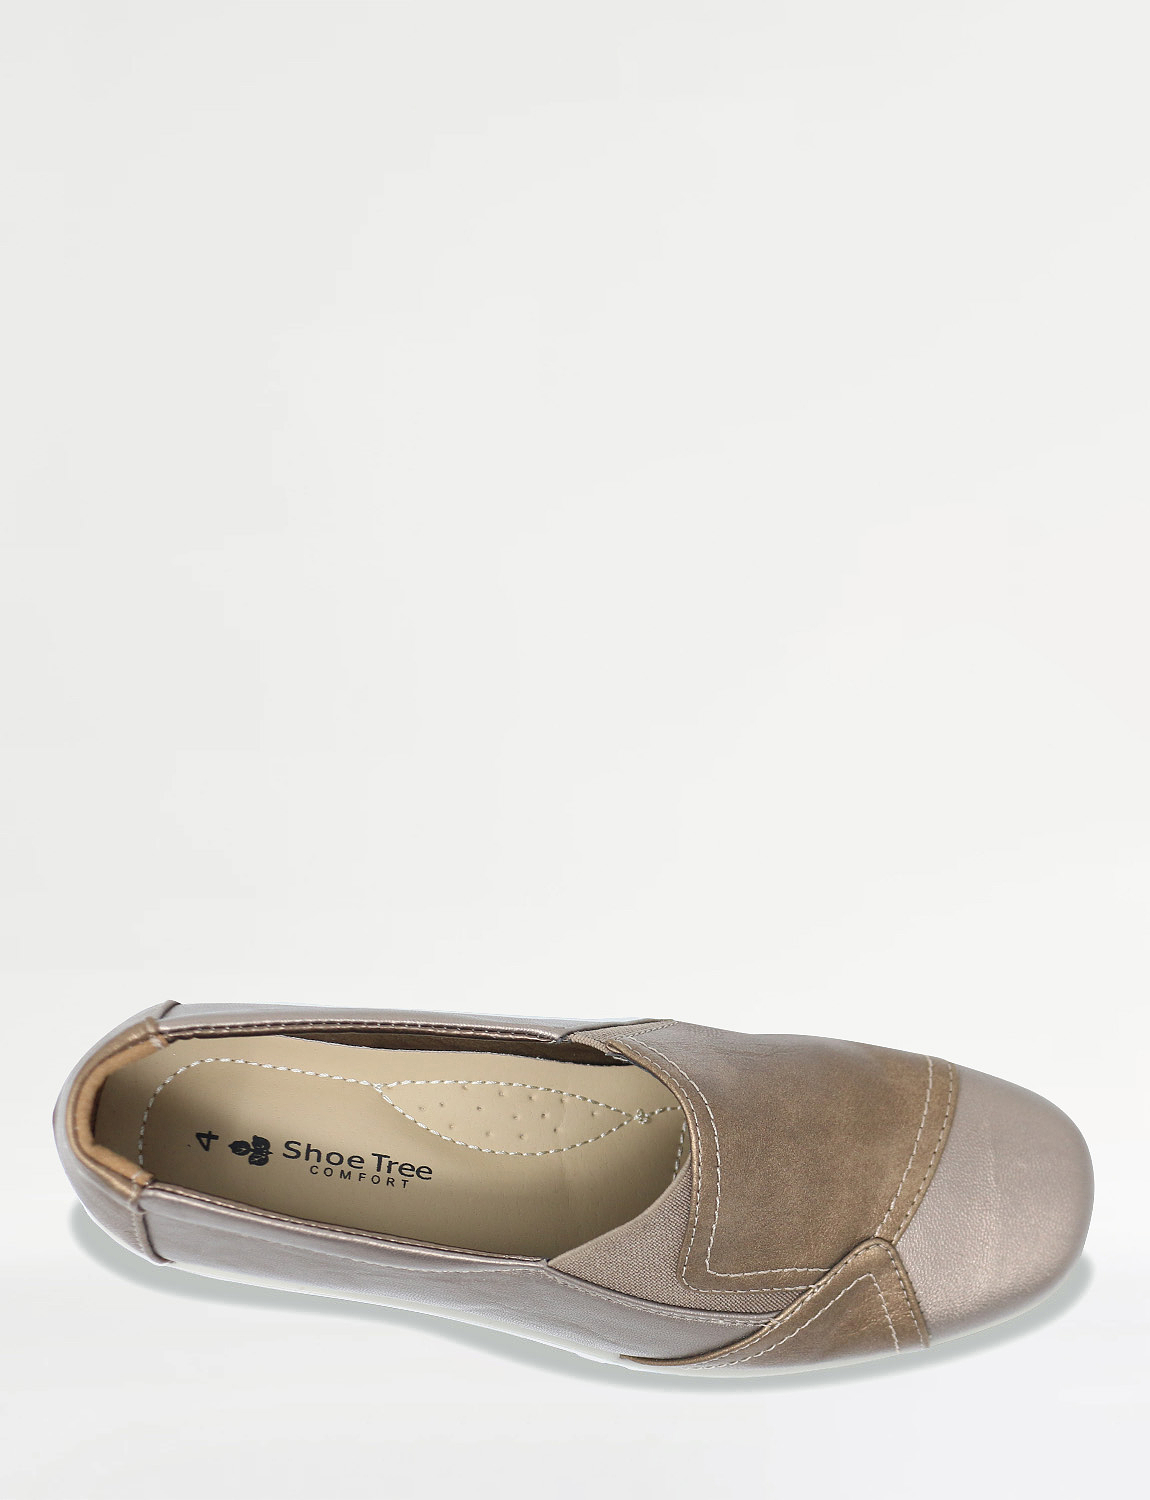 Ladies Patchwork Gusset Flexisole Comfort Shoe | Chums